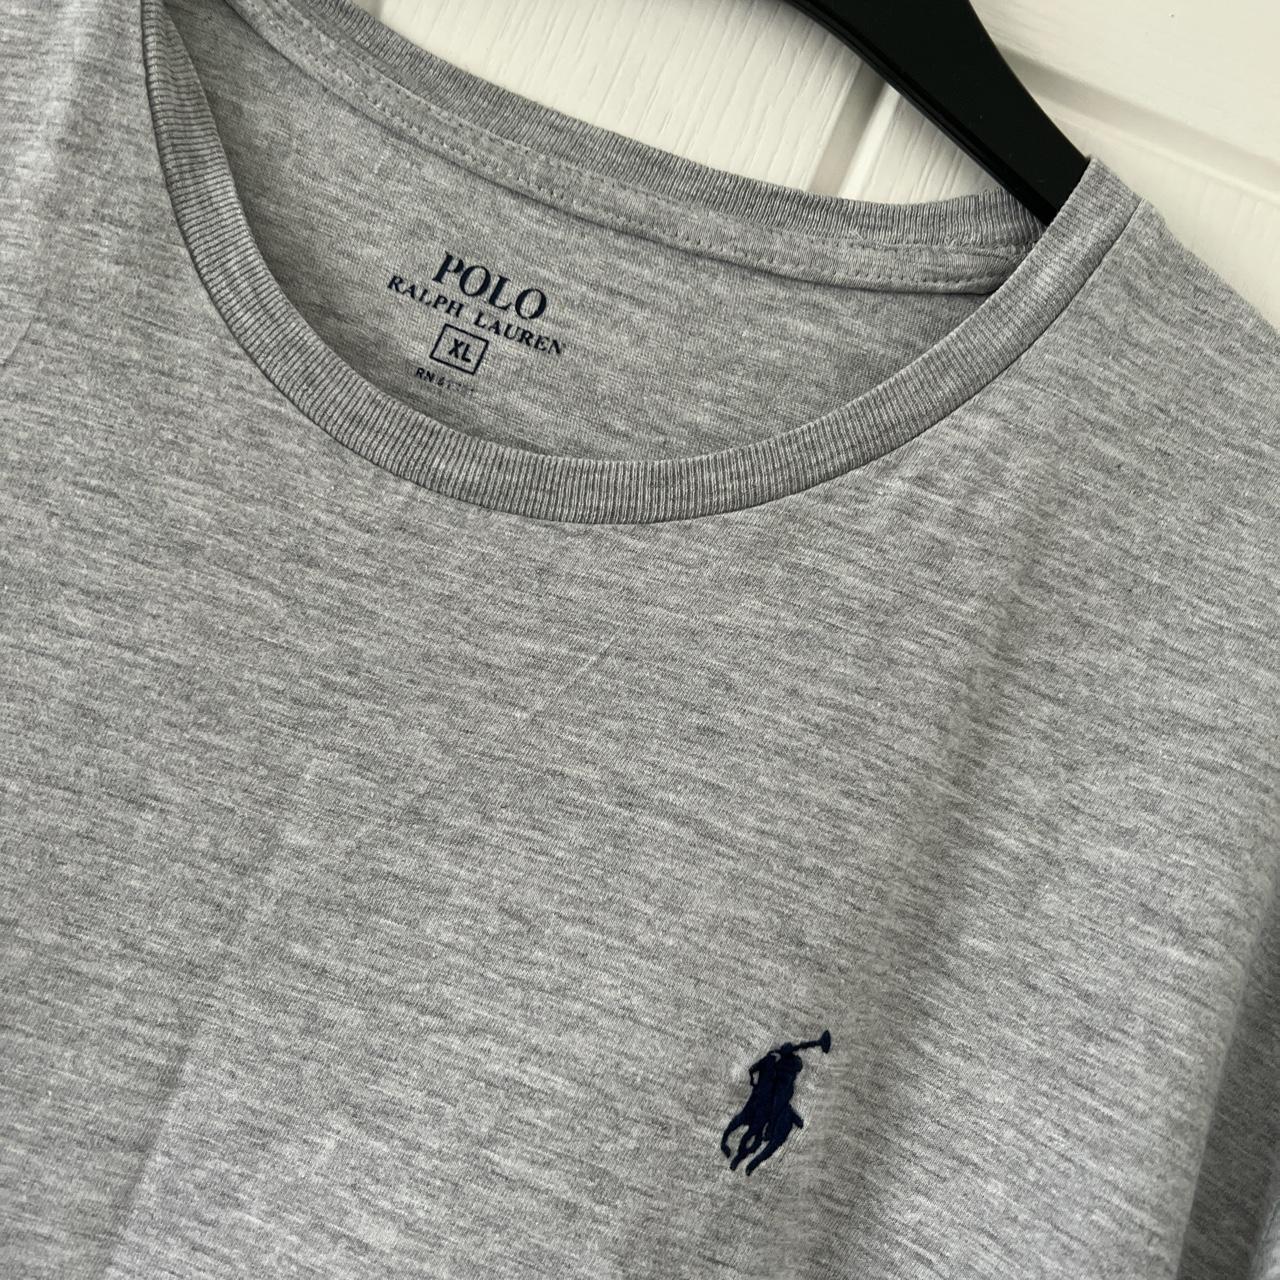 Polo Ralph Lauren Men's T-shirt | Depop